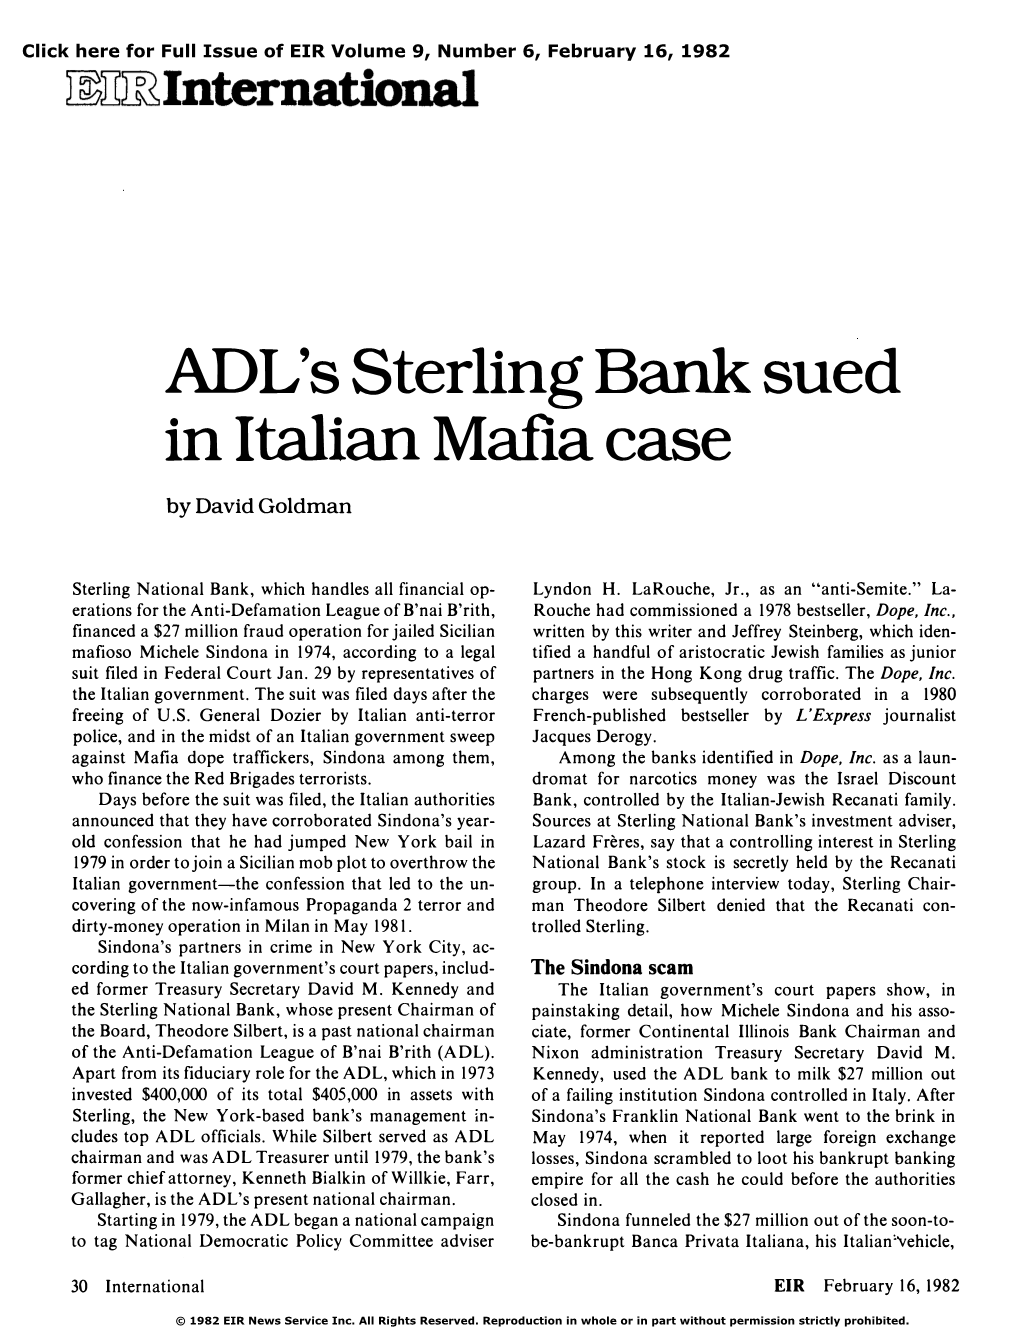 ADL's Sterling Bank Sued in Italian Mafia Case